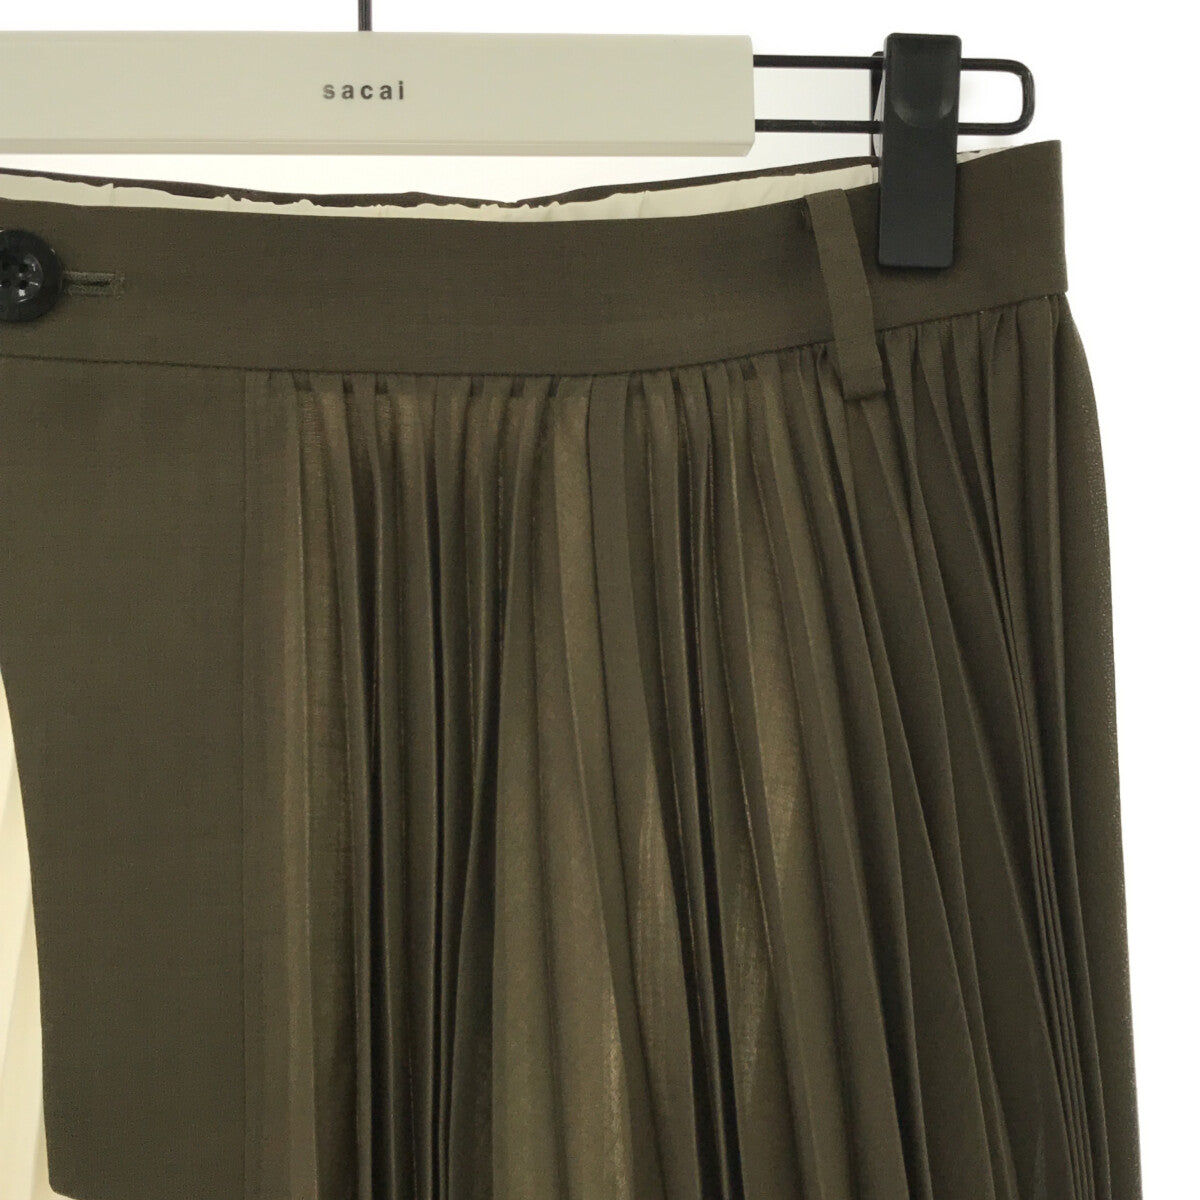 sacai / サカイ | 2021SS | Suiting Skirt ドッキング ラップ プリーツ ロング スカート ペチコート・ハンガー付き |  2 |